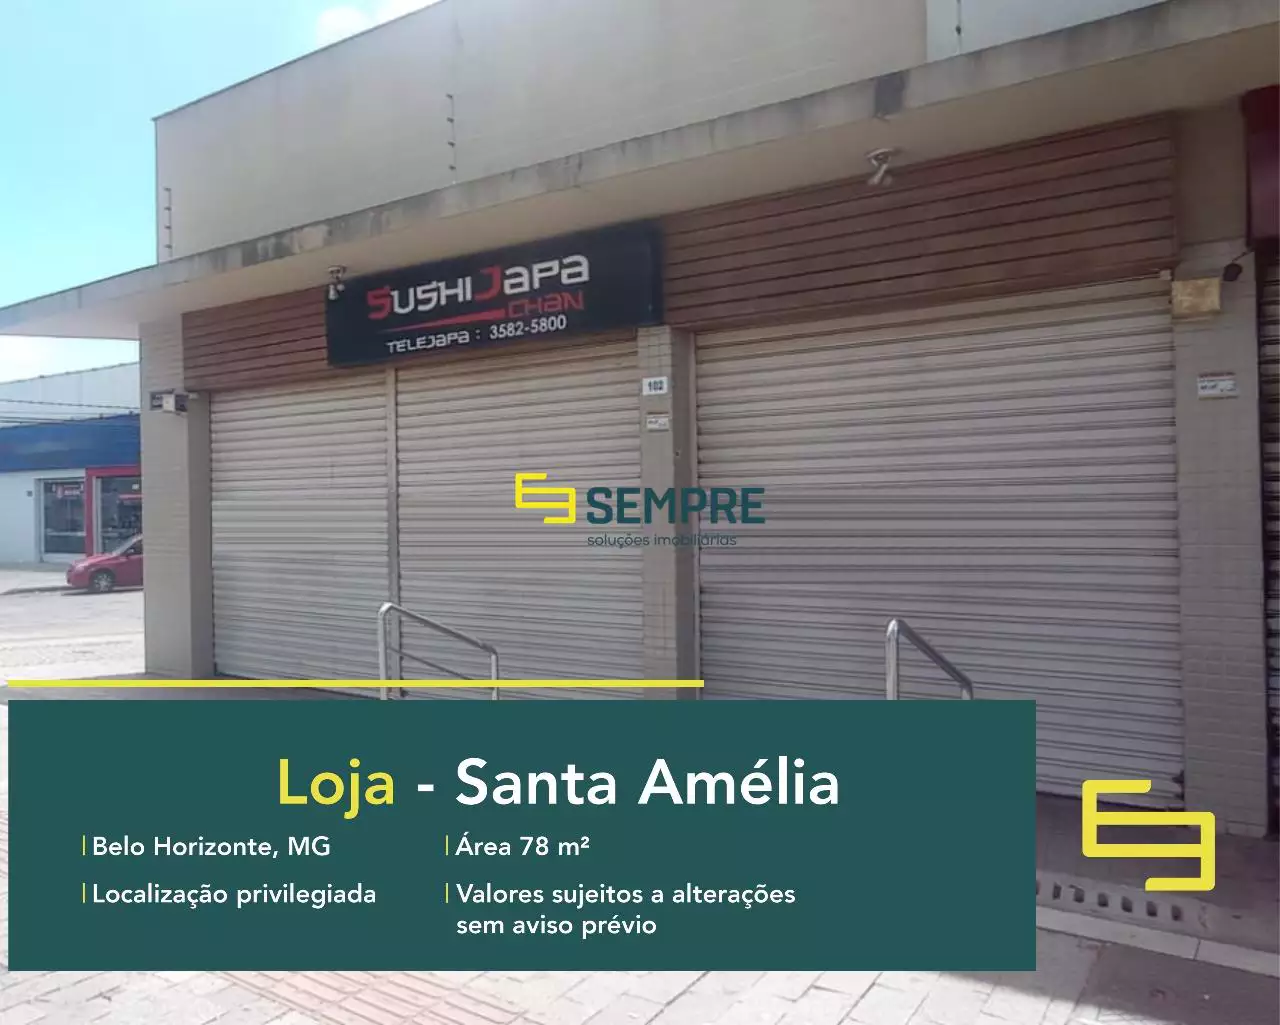 Loja para vender na Pampulha em Belo Horizonte, em excelente localização. O estabelecimento comercial conta com área de 78 m².